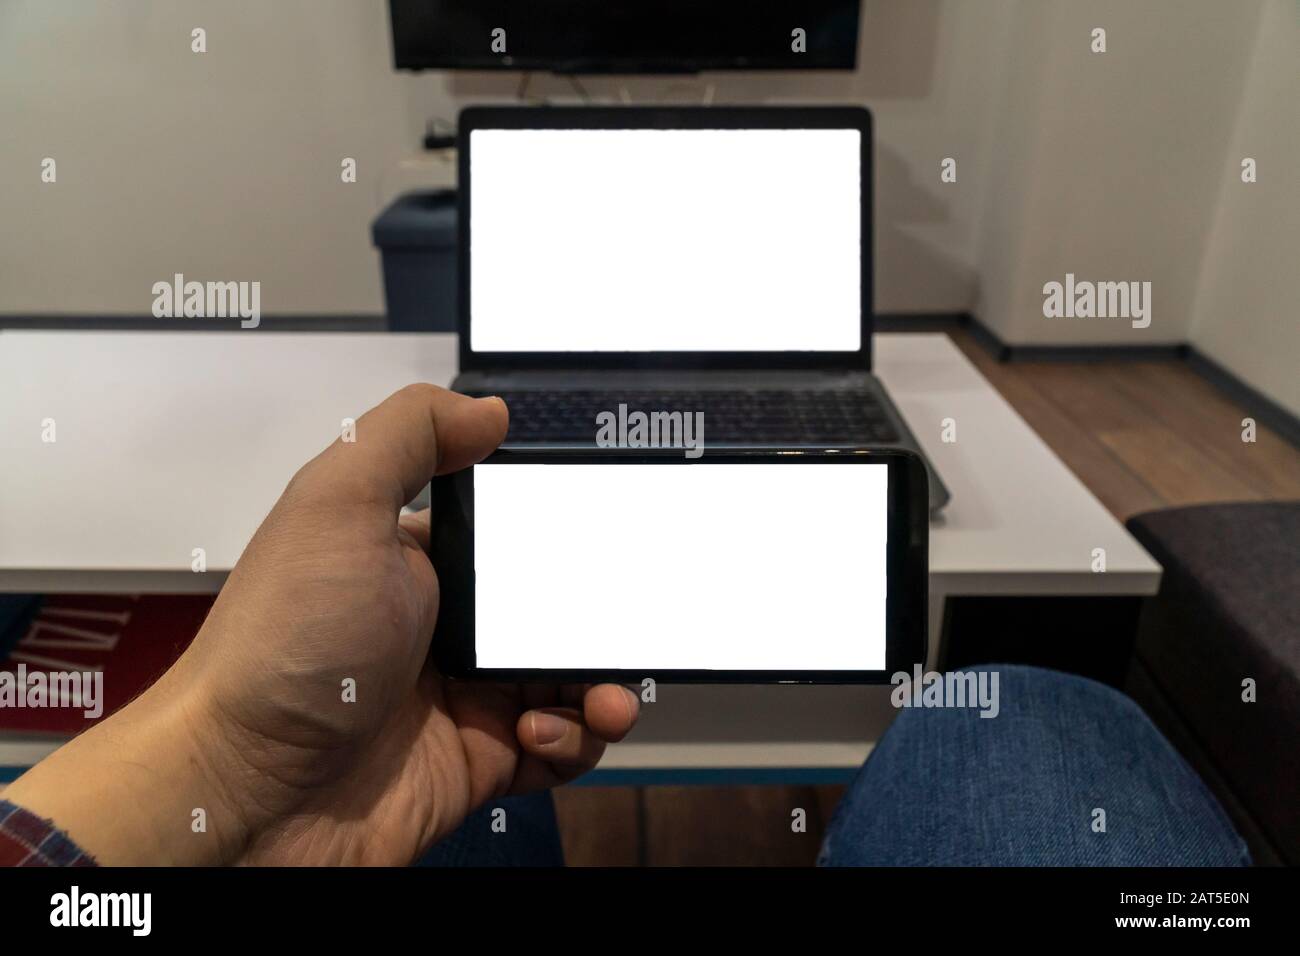 Streaming- und Cast-Konzept. Handy und Laptop mit leeren Bildschirmen, die drahtloses Streaming oder Casting möglich machen Stockfoto